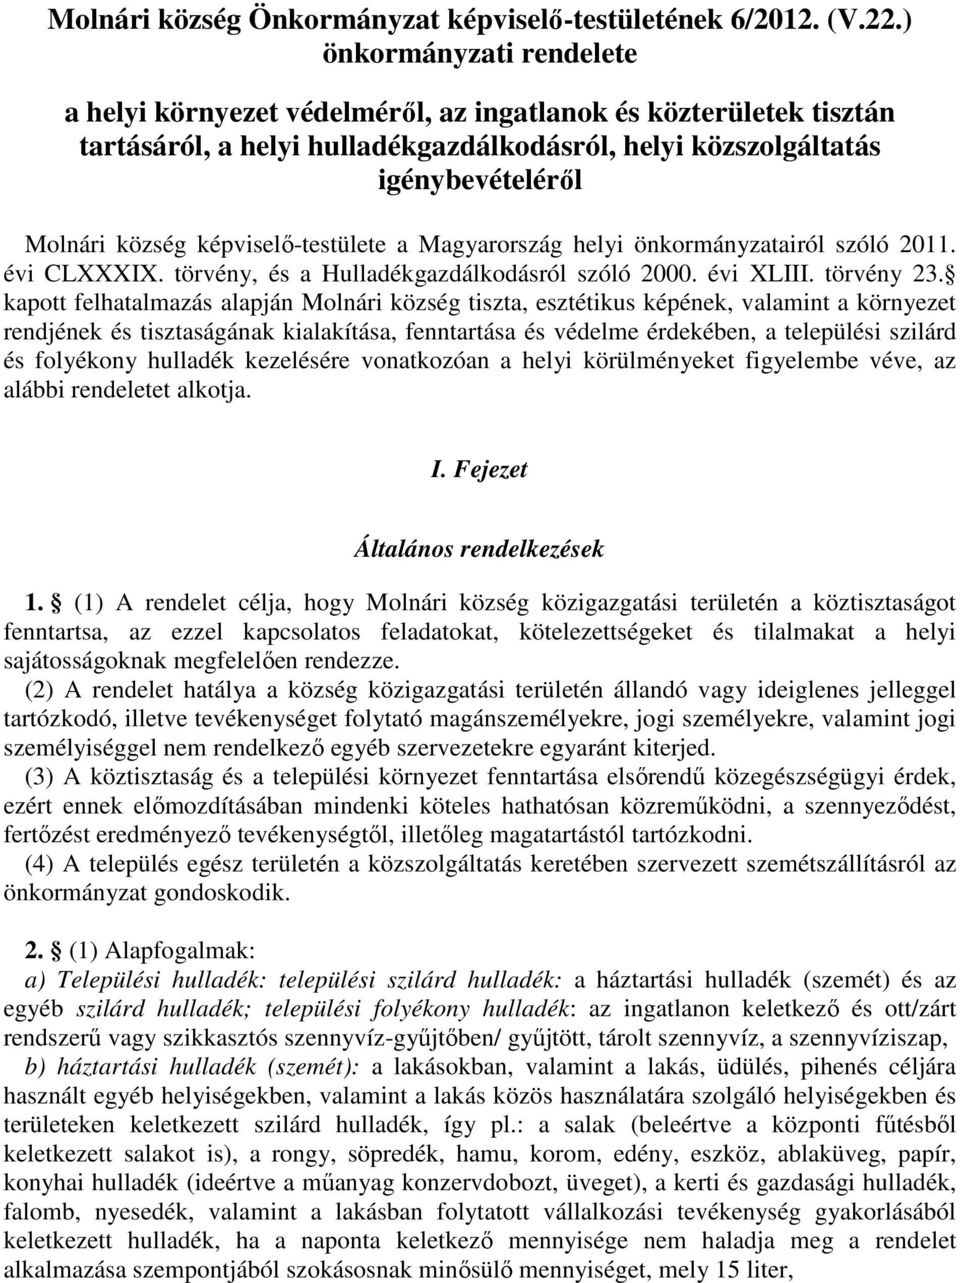 képviselő-testülete a Magyarország helyi önkormányzatairól szóló 2011. évi CLXXXIX. törvény, és a Hulladékgazdálkodásról szóló 2000. évi XLIII. törvény 23.